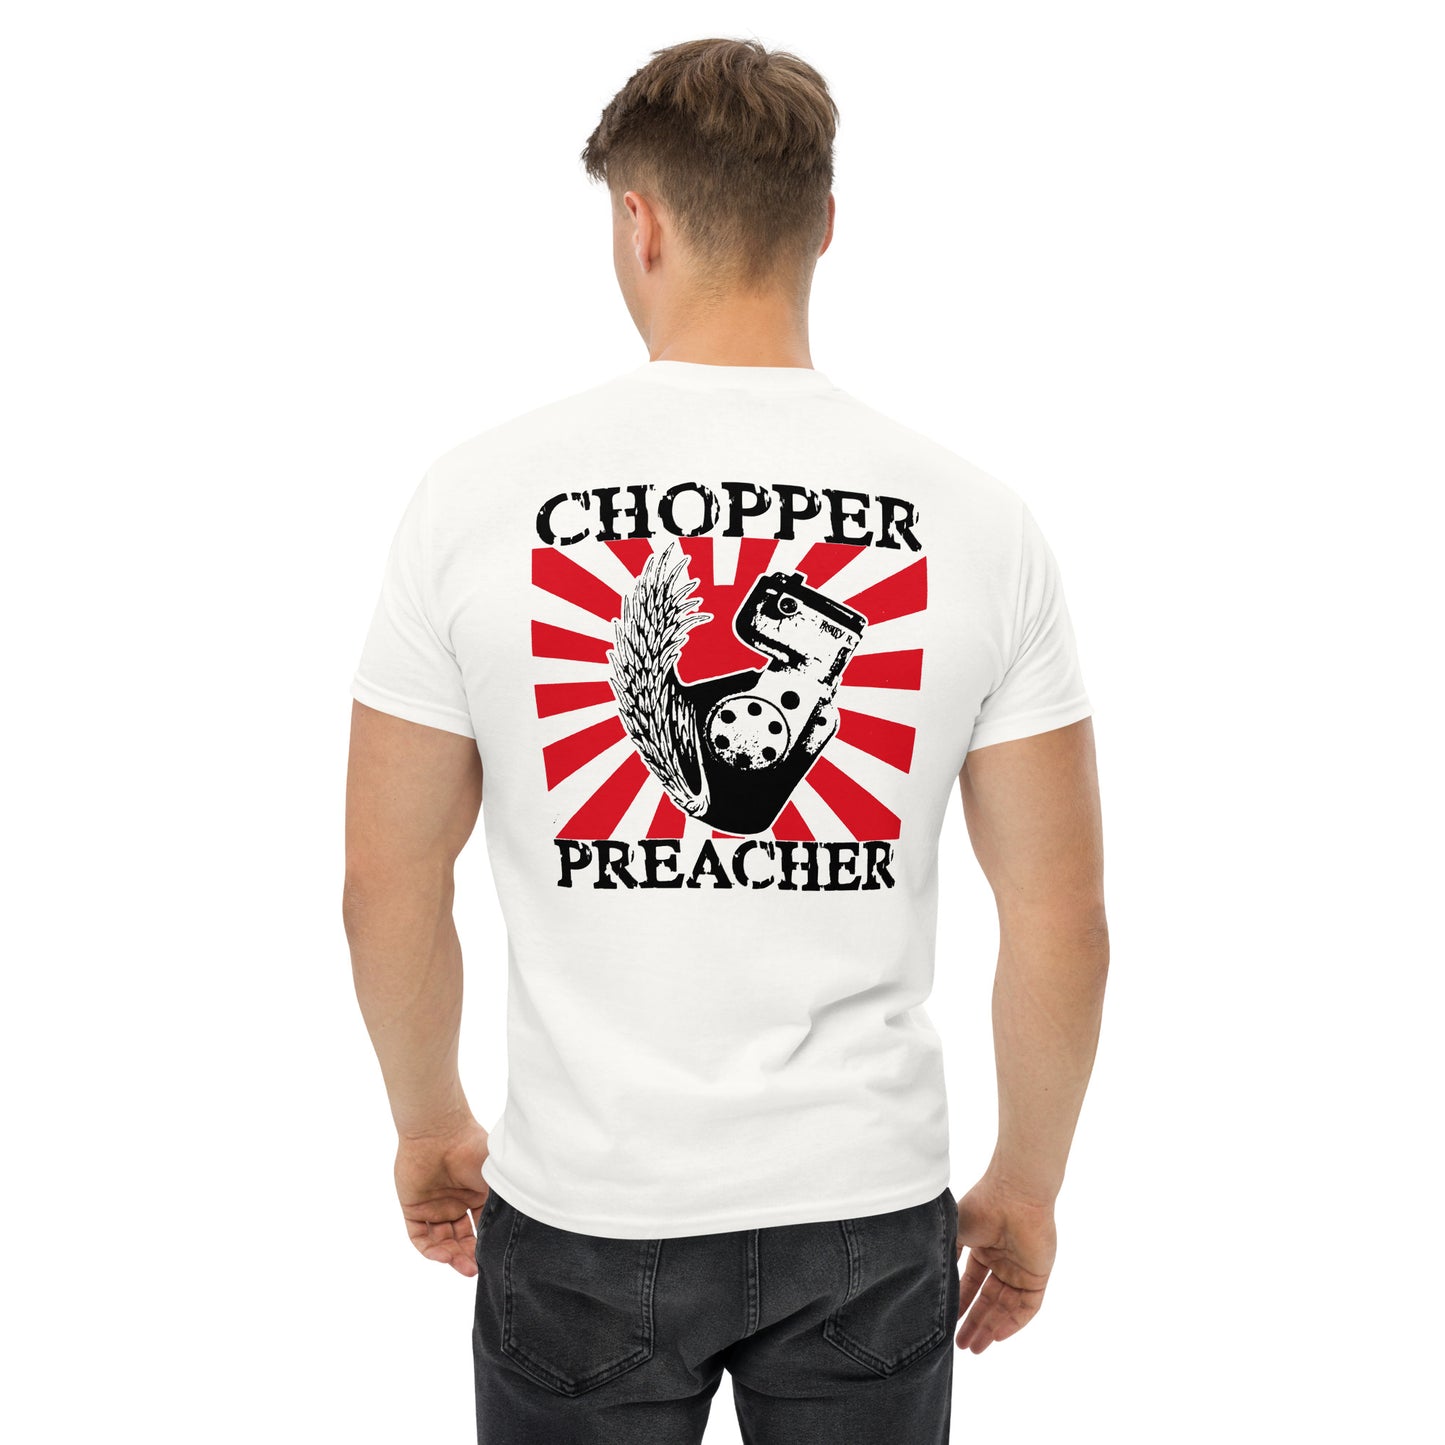 T-shirt "Chopper Preacher"